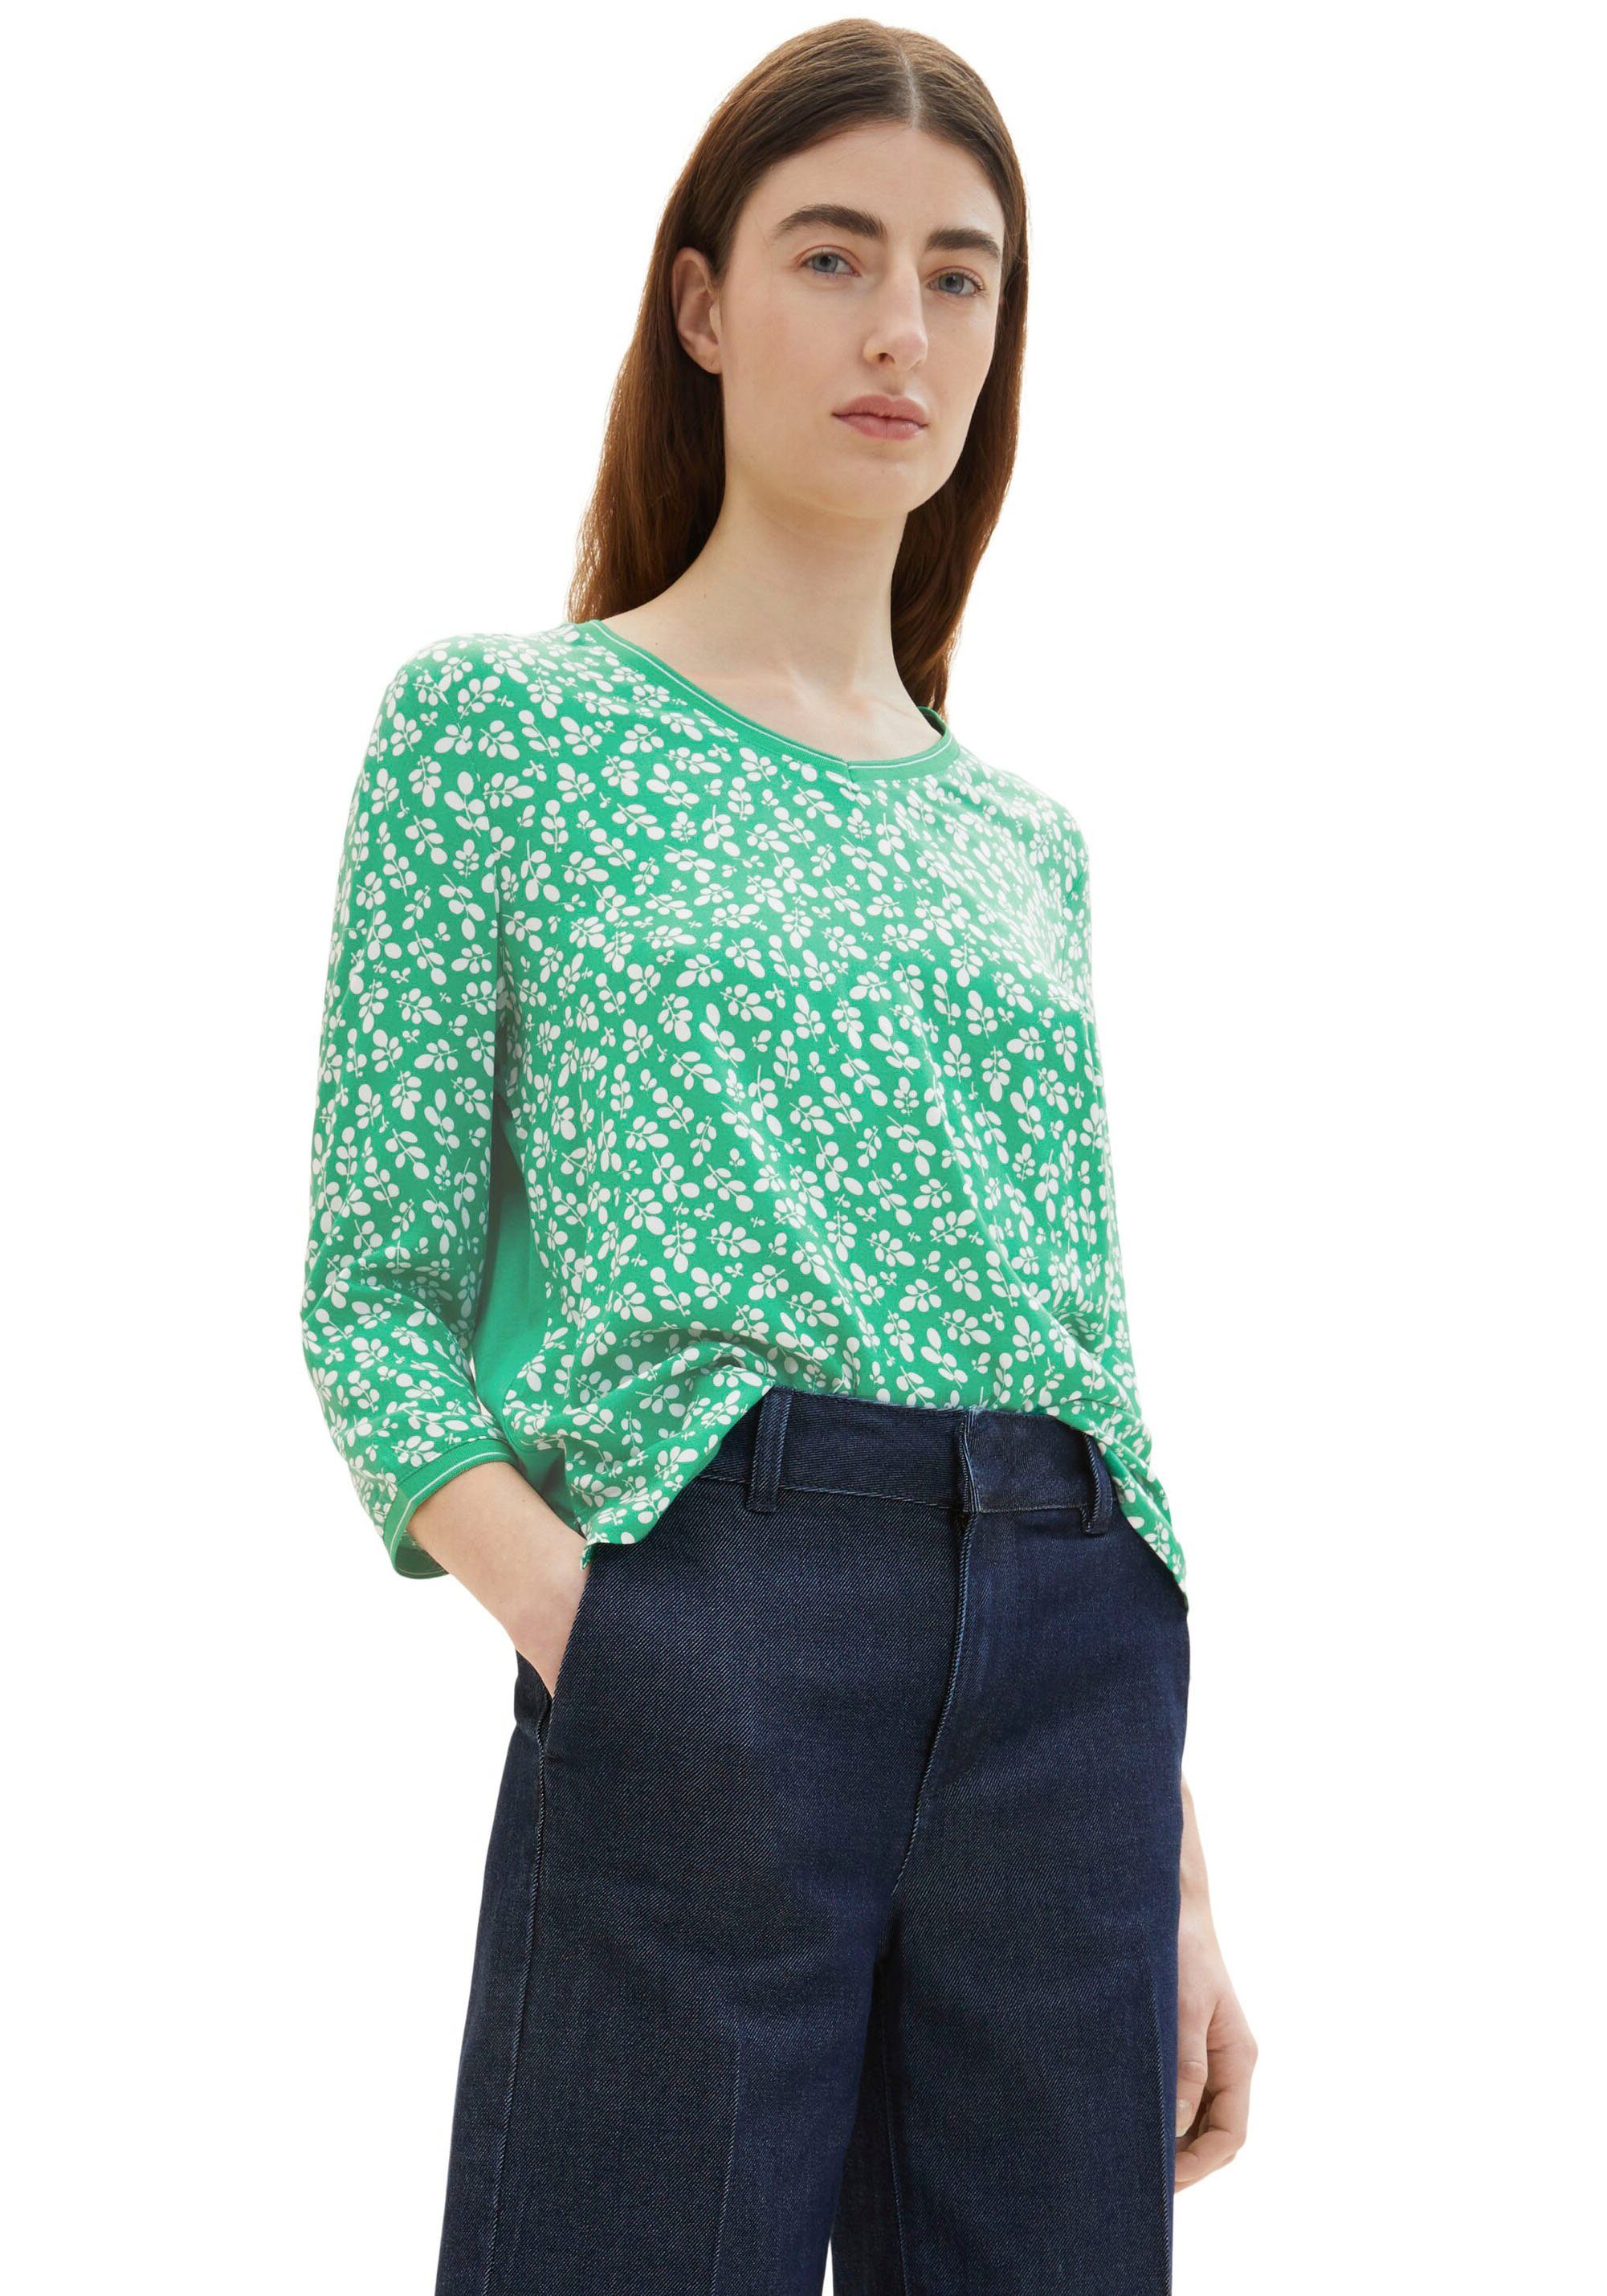 Bedruckung flor TOM TAILOR T-Shirt green mit